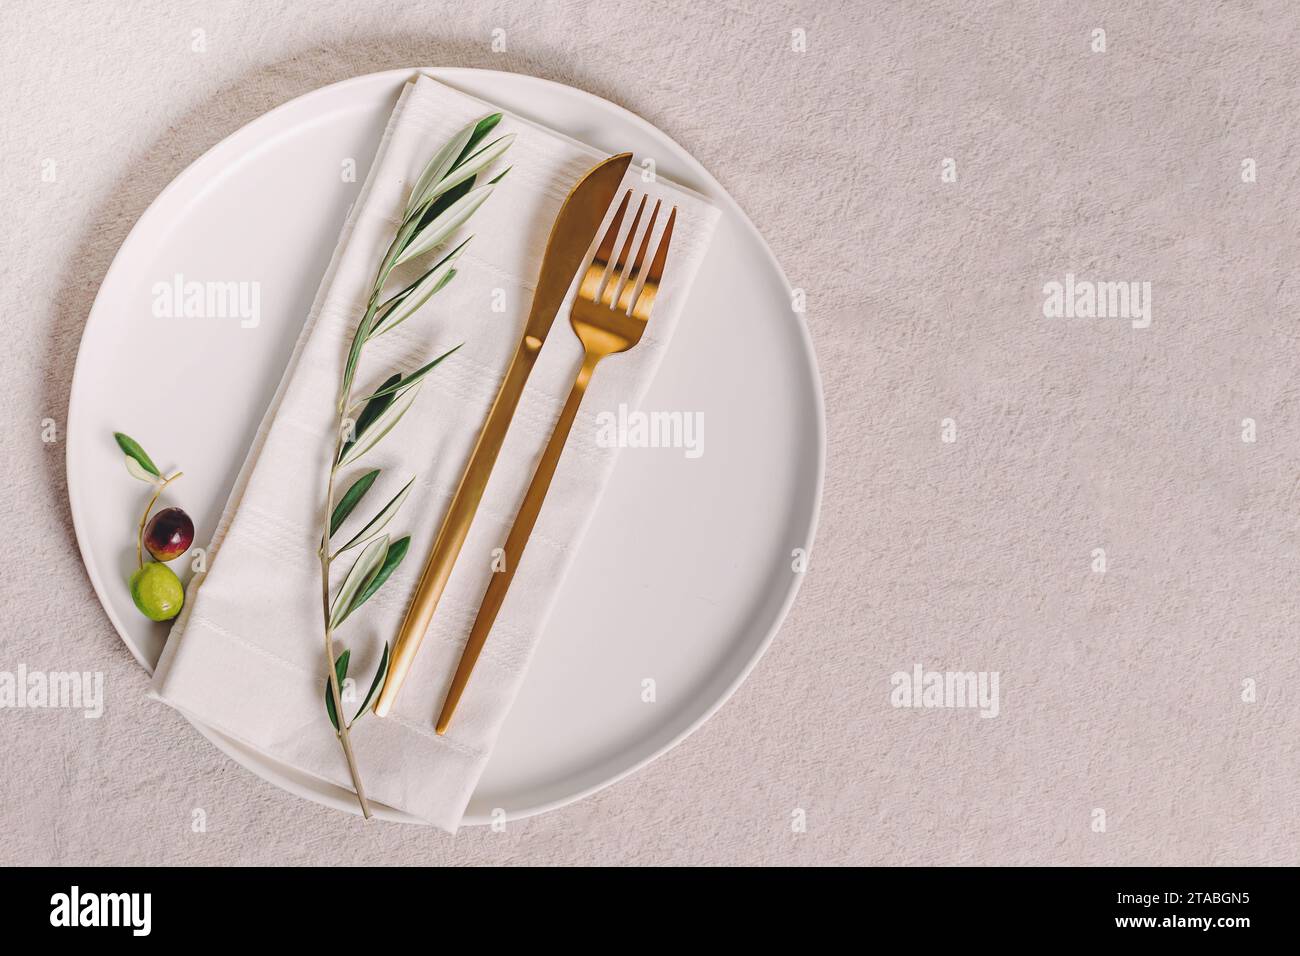 Assiette avec couverts de couleur dorée et branche d'olivier, élégant arrangement de table, vue de dessus Banque D'Images